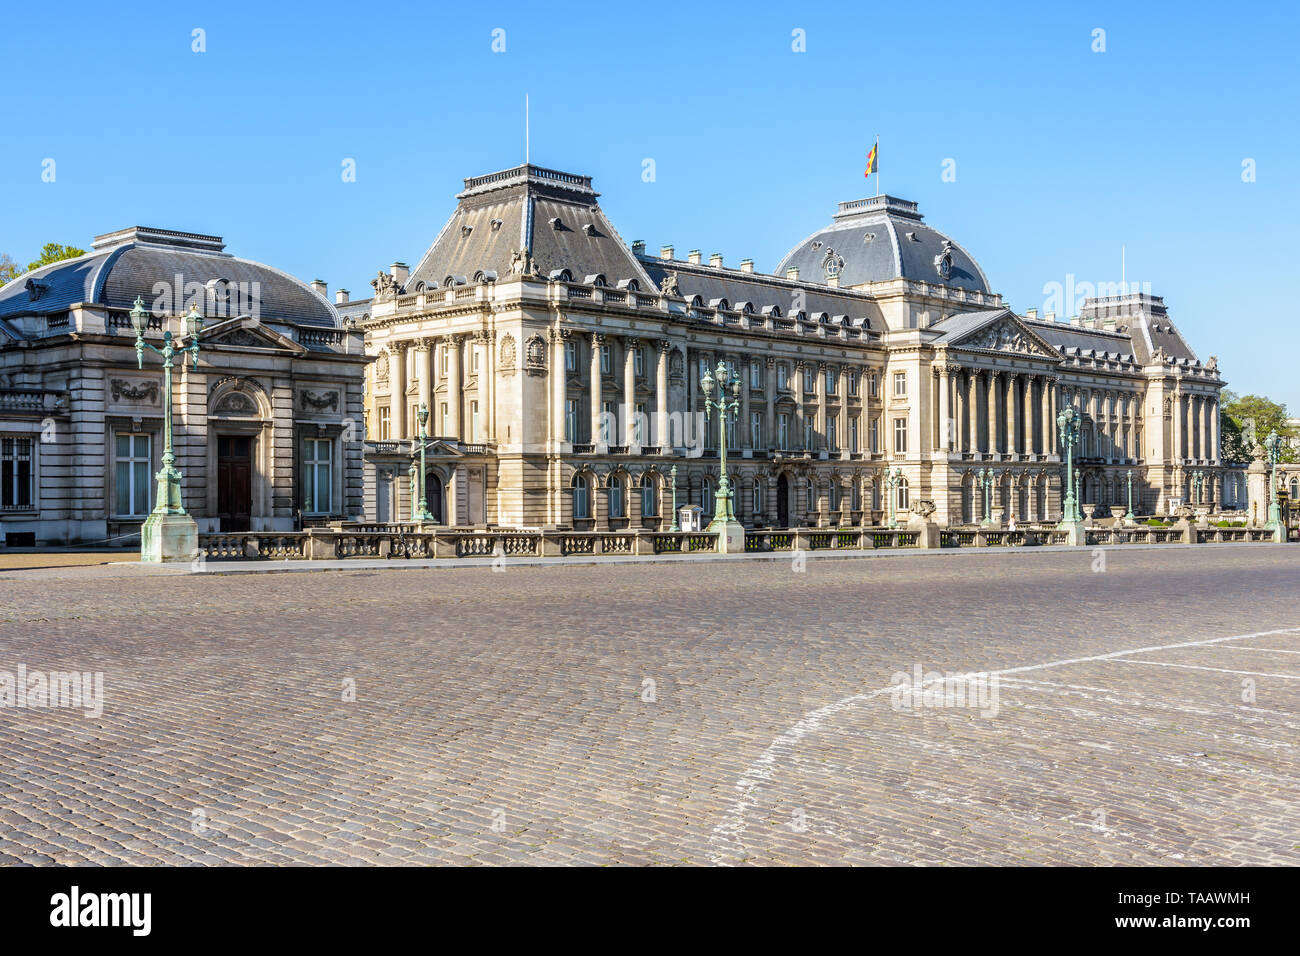 Allgemeine Ansicht der Hauptfassade der Königliche Palast von Brüssel, die offizielle Palast des Königs und der Königin der Belgier in Brüssel, Belgien. Stockfoto